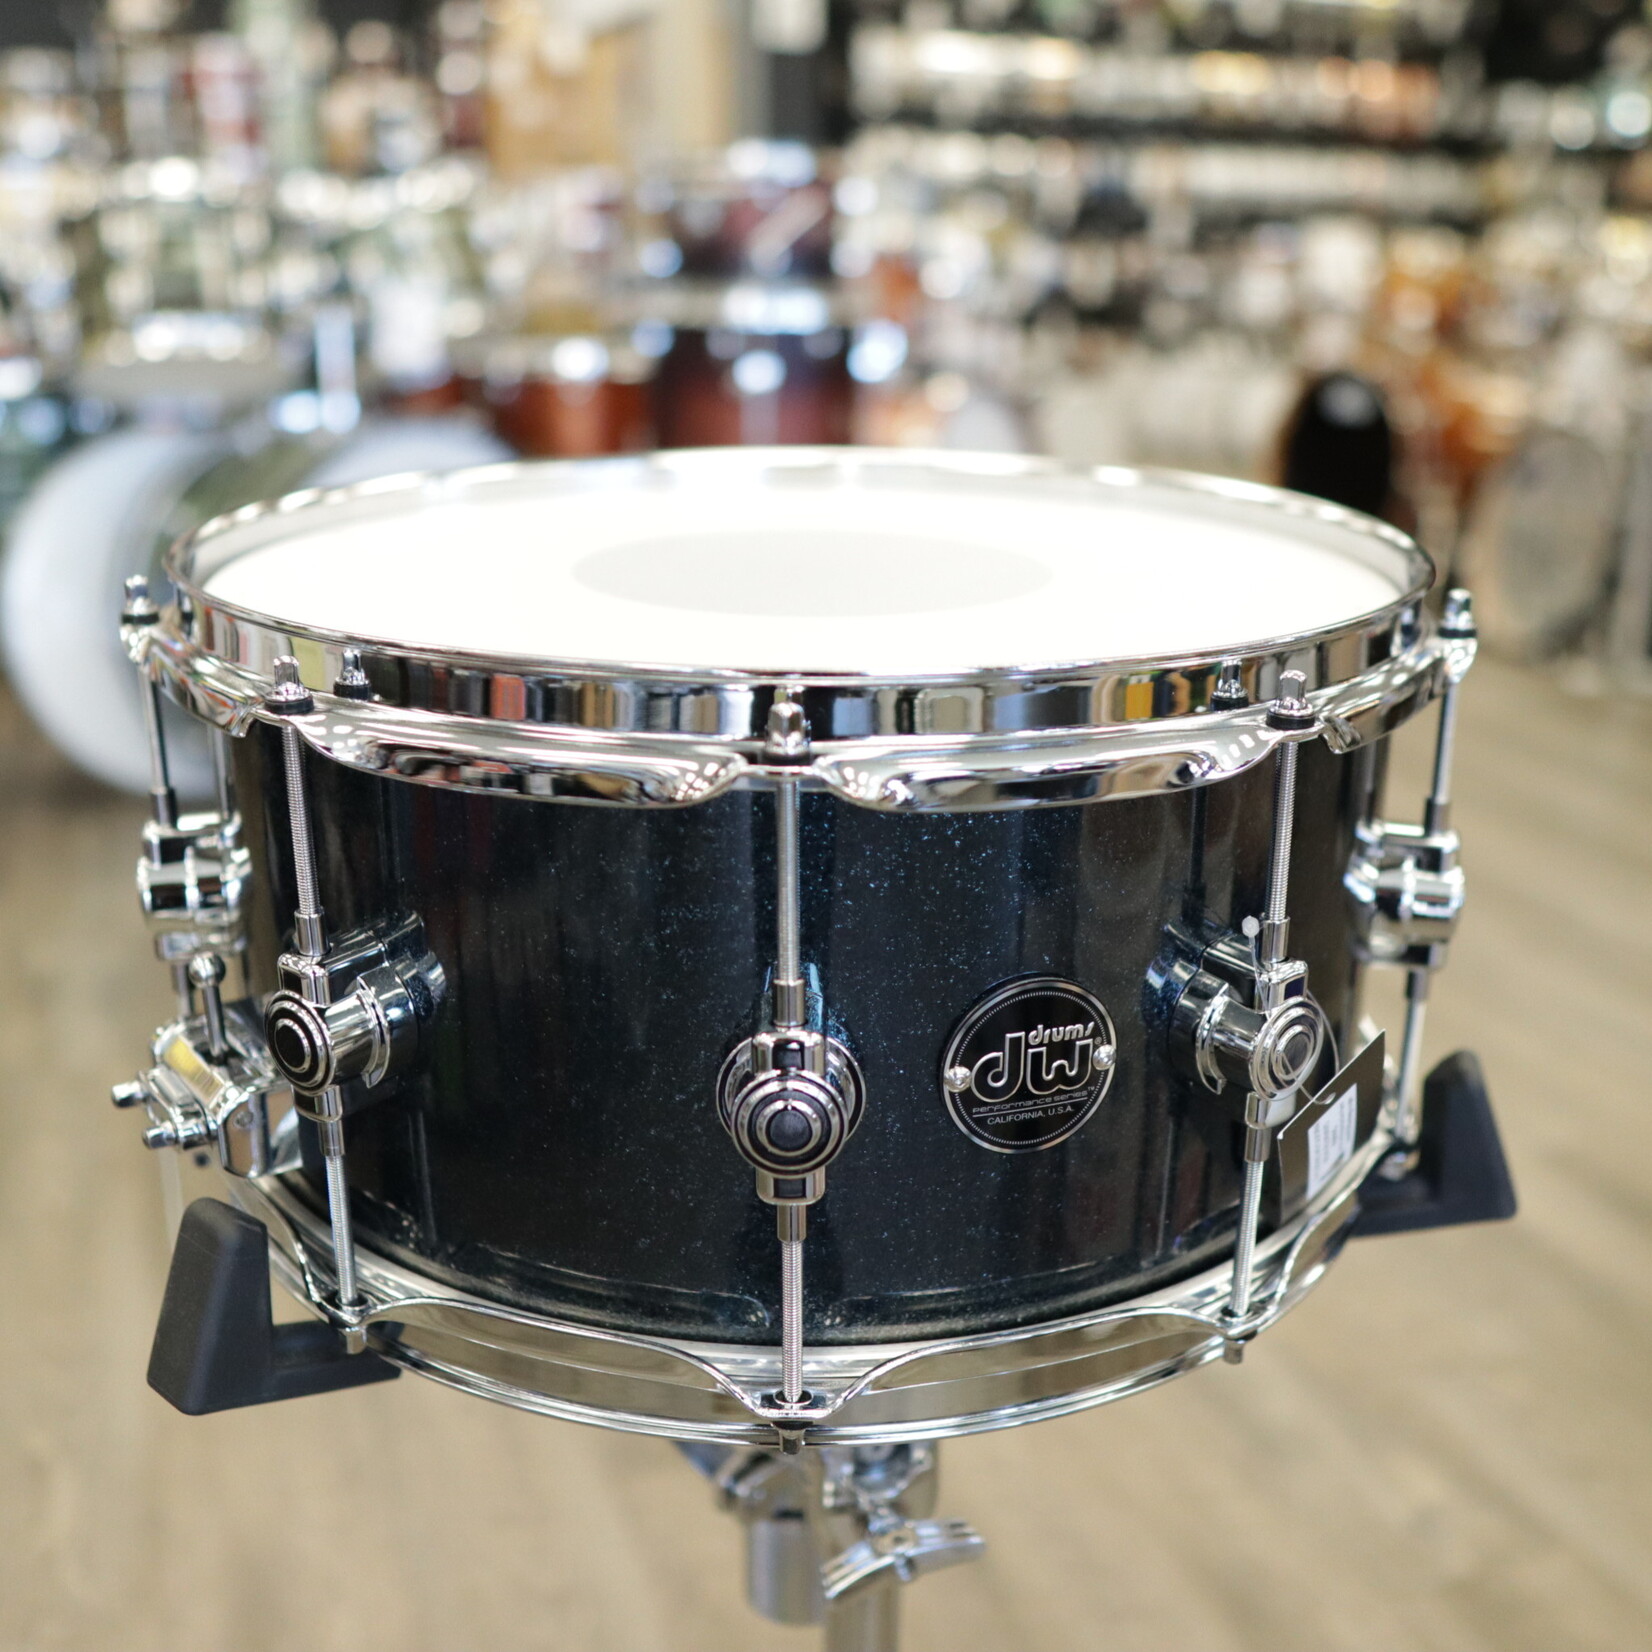 DW DW Limited Edition 6.5x14" Performance Series Cherry HVX Snare Drum (Black Sparkle)